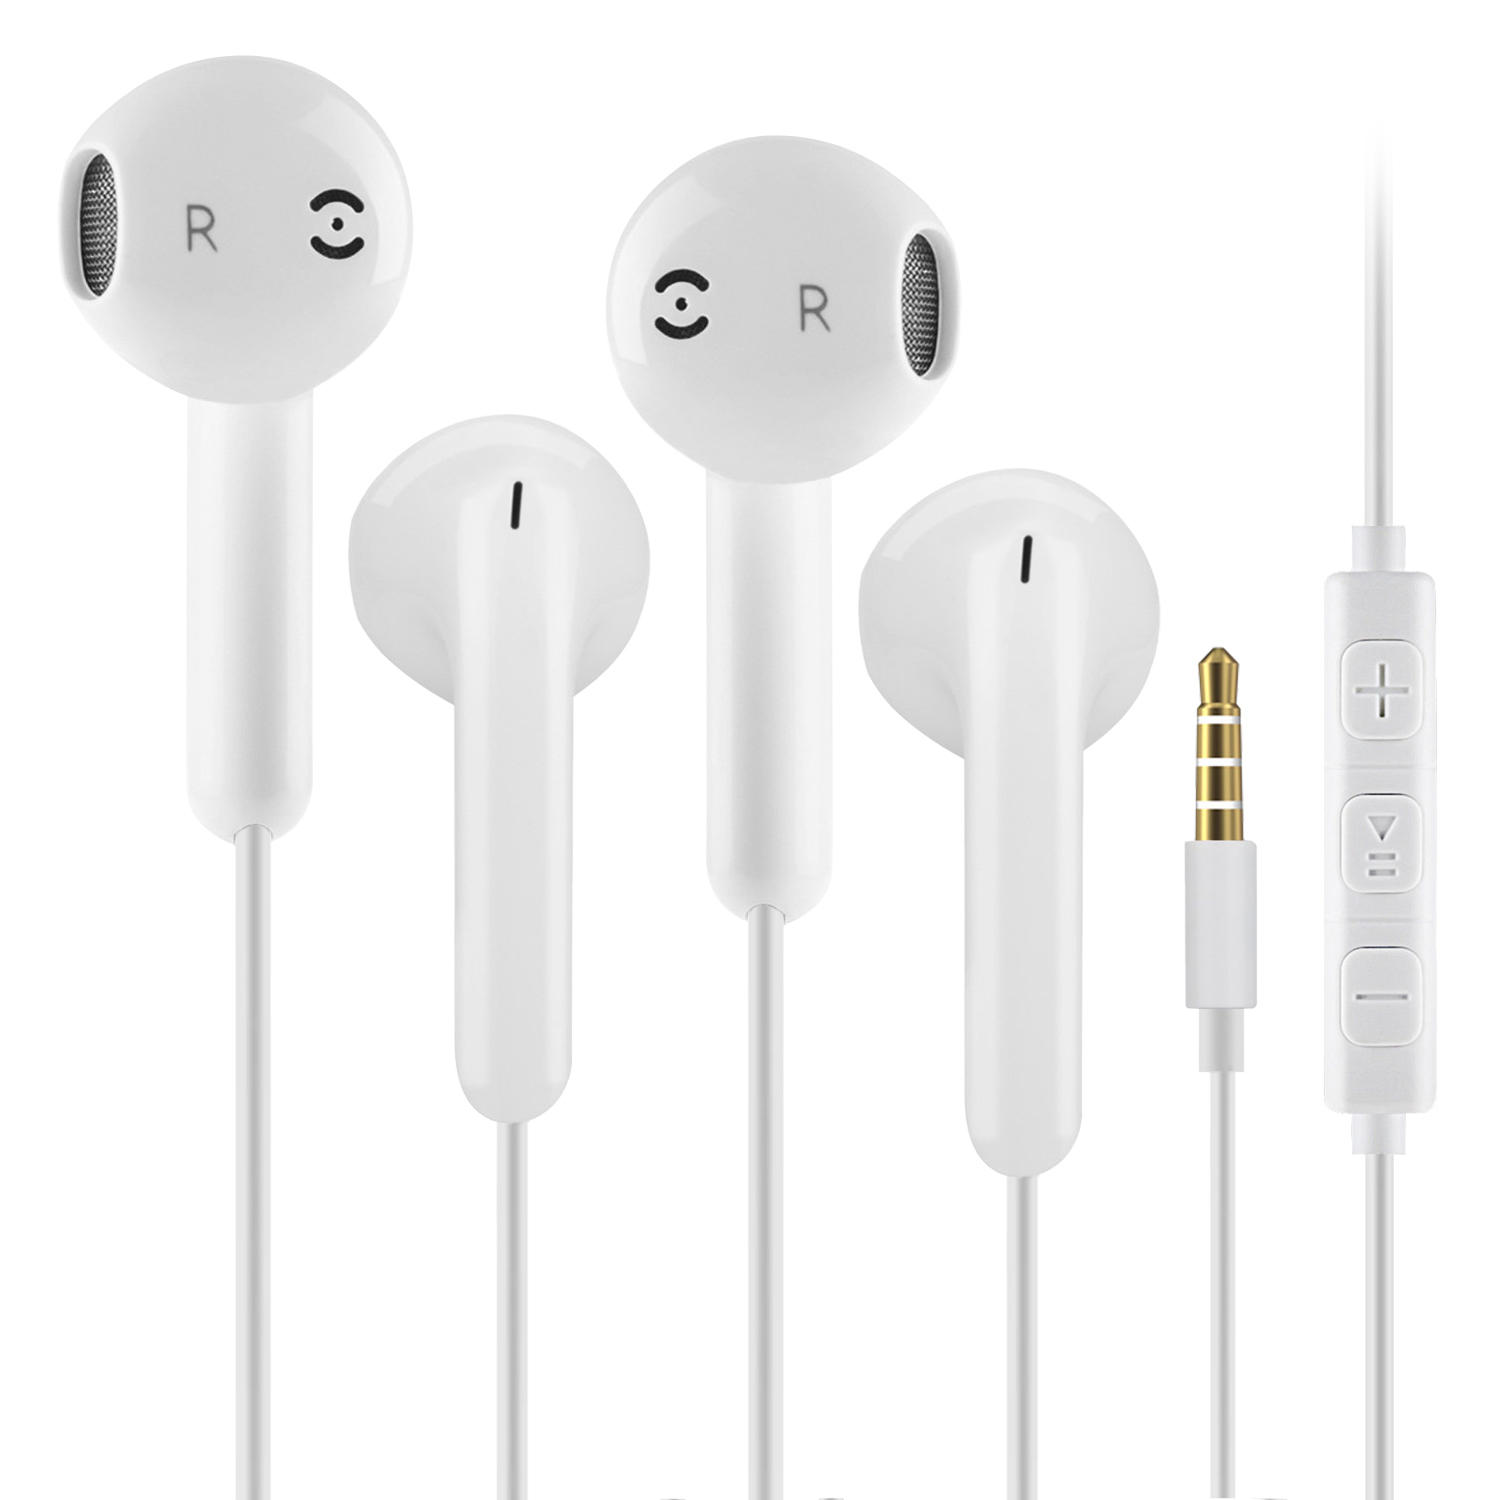 Control con cable universal profesional en la oreja Auricular Auriculares Auriculares HiFi de graves pesados para teléfo